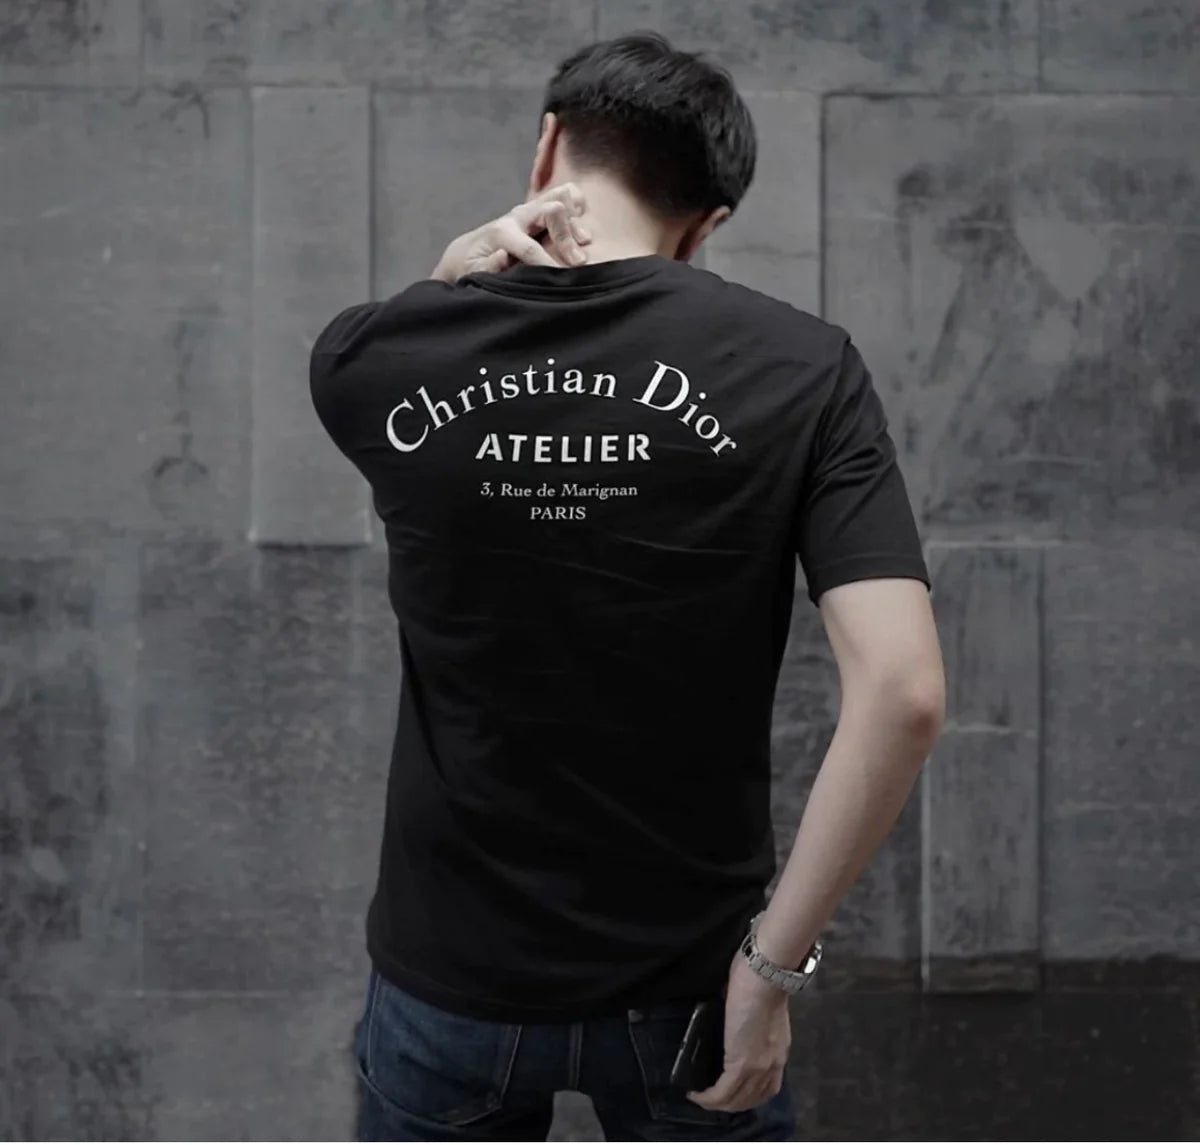 6,600円christian Dior atelier tシャツ M